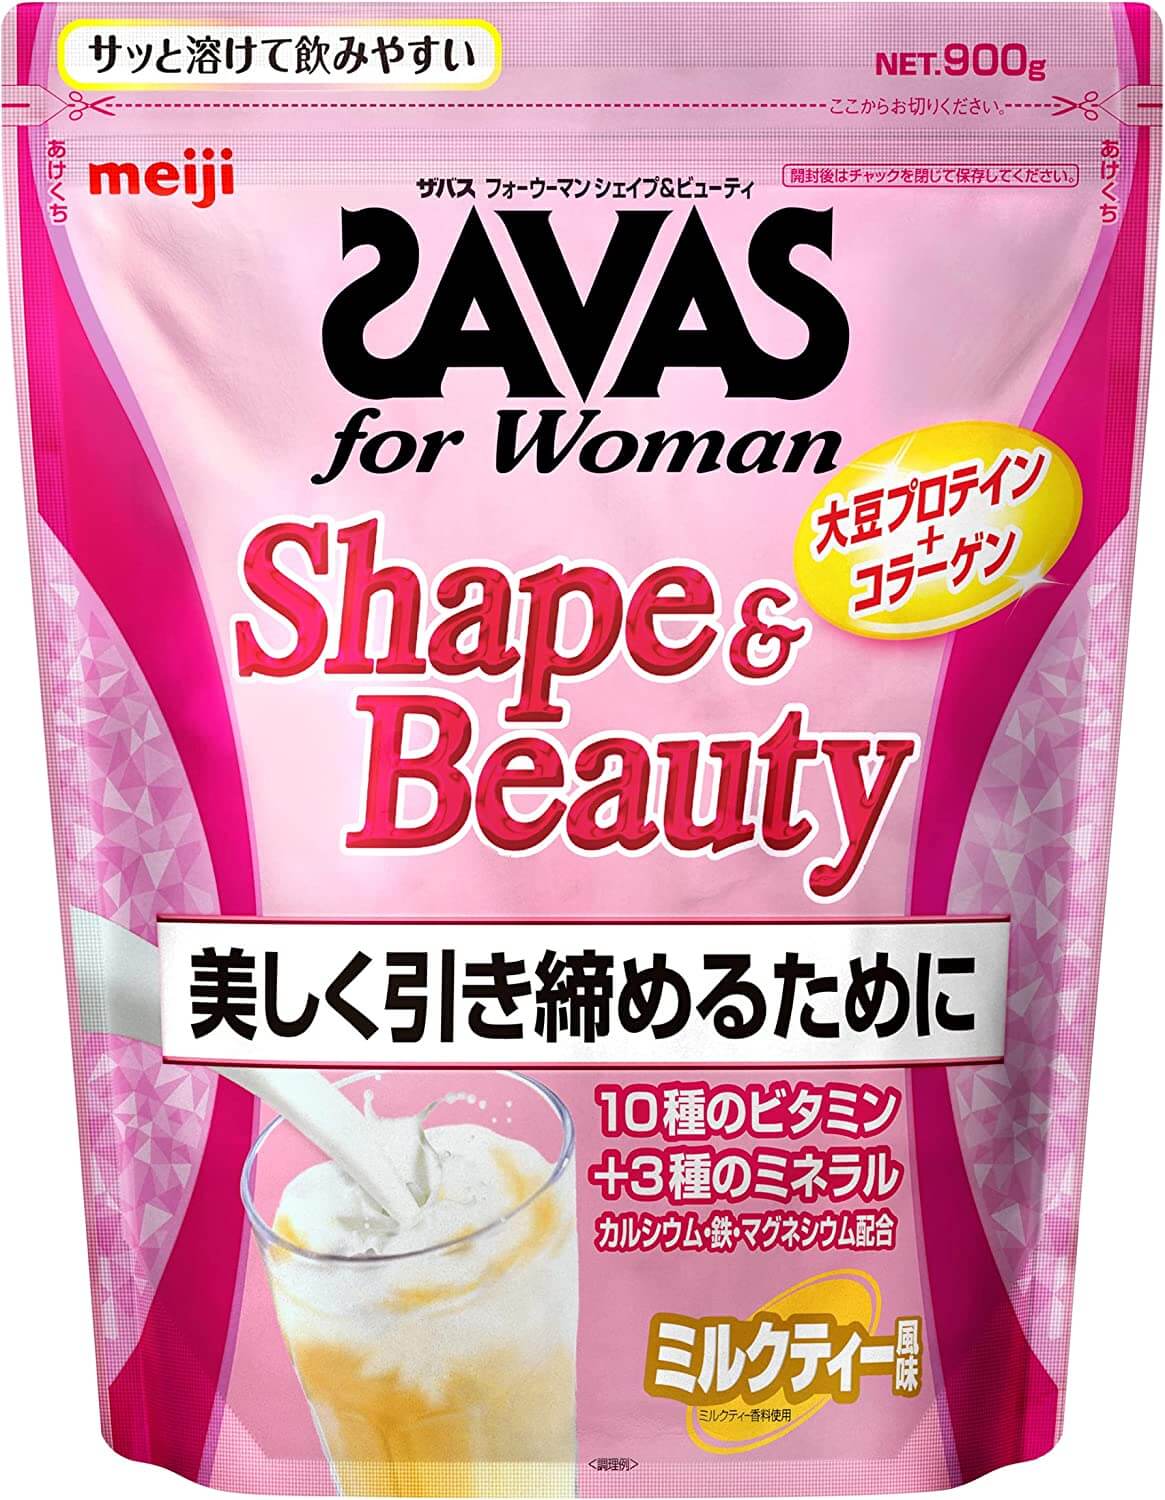 明治 ザバス(SAVAS) for Woman